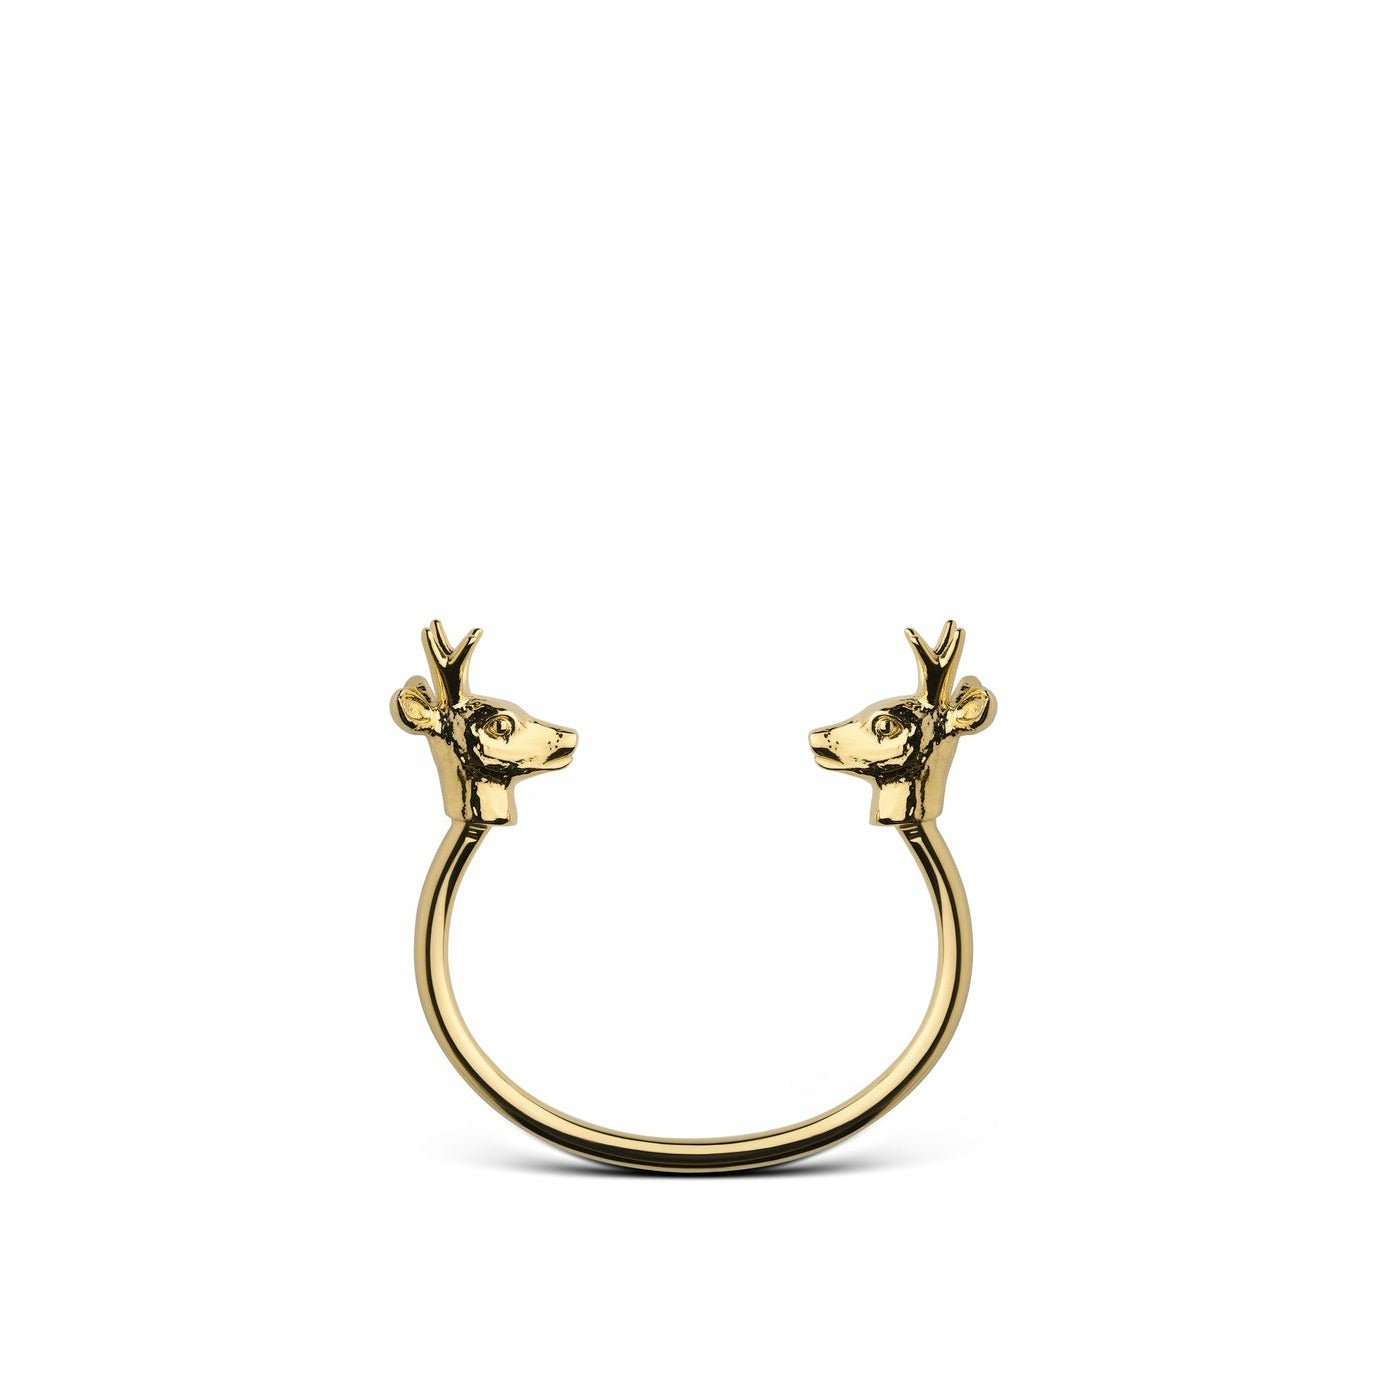 Skultuna Skandál volně žijící deer náramek velký zlatý, Ø18,5 cm